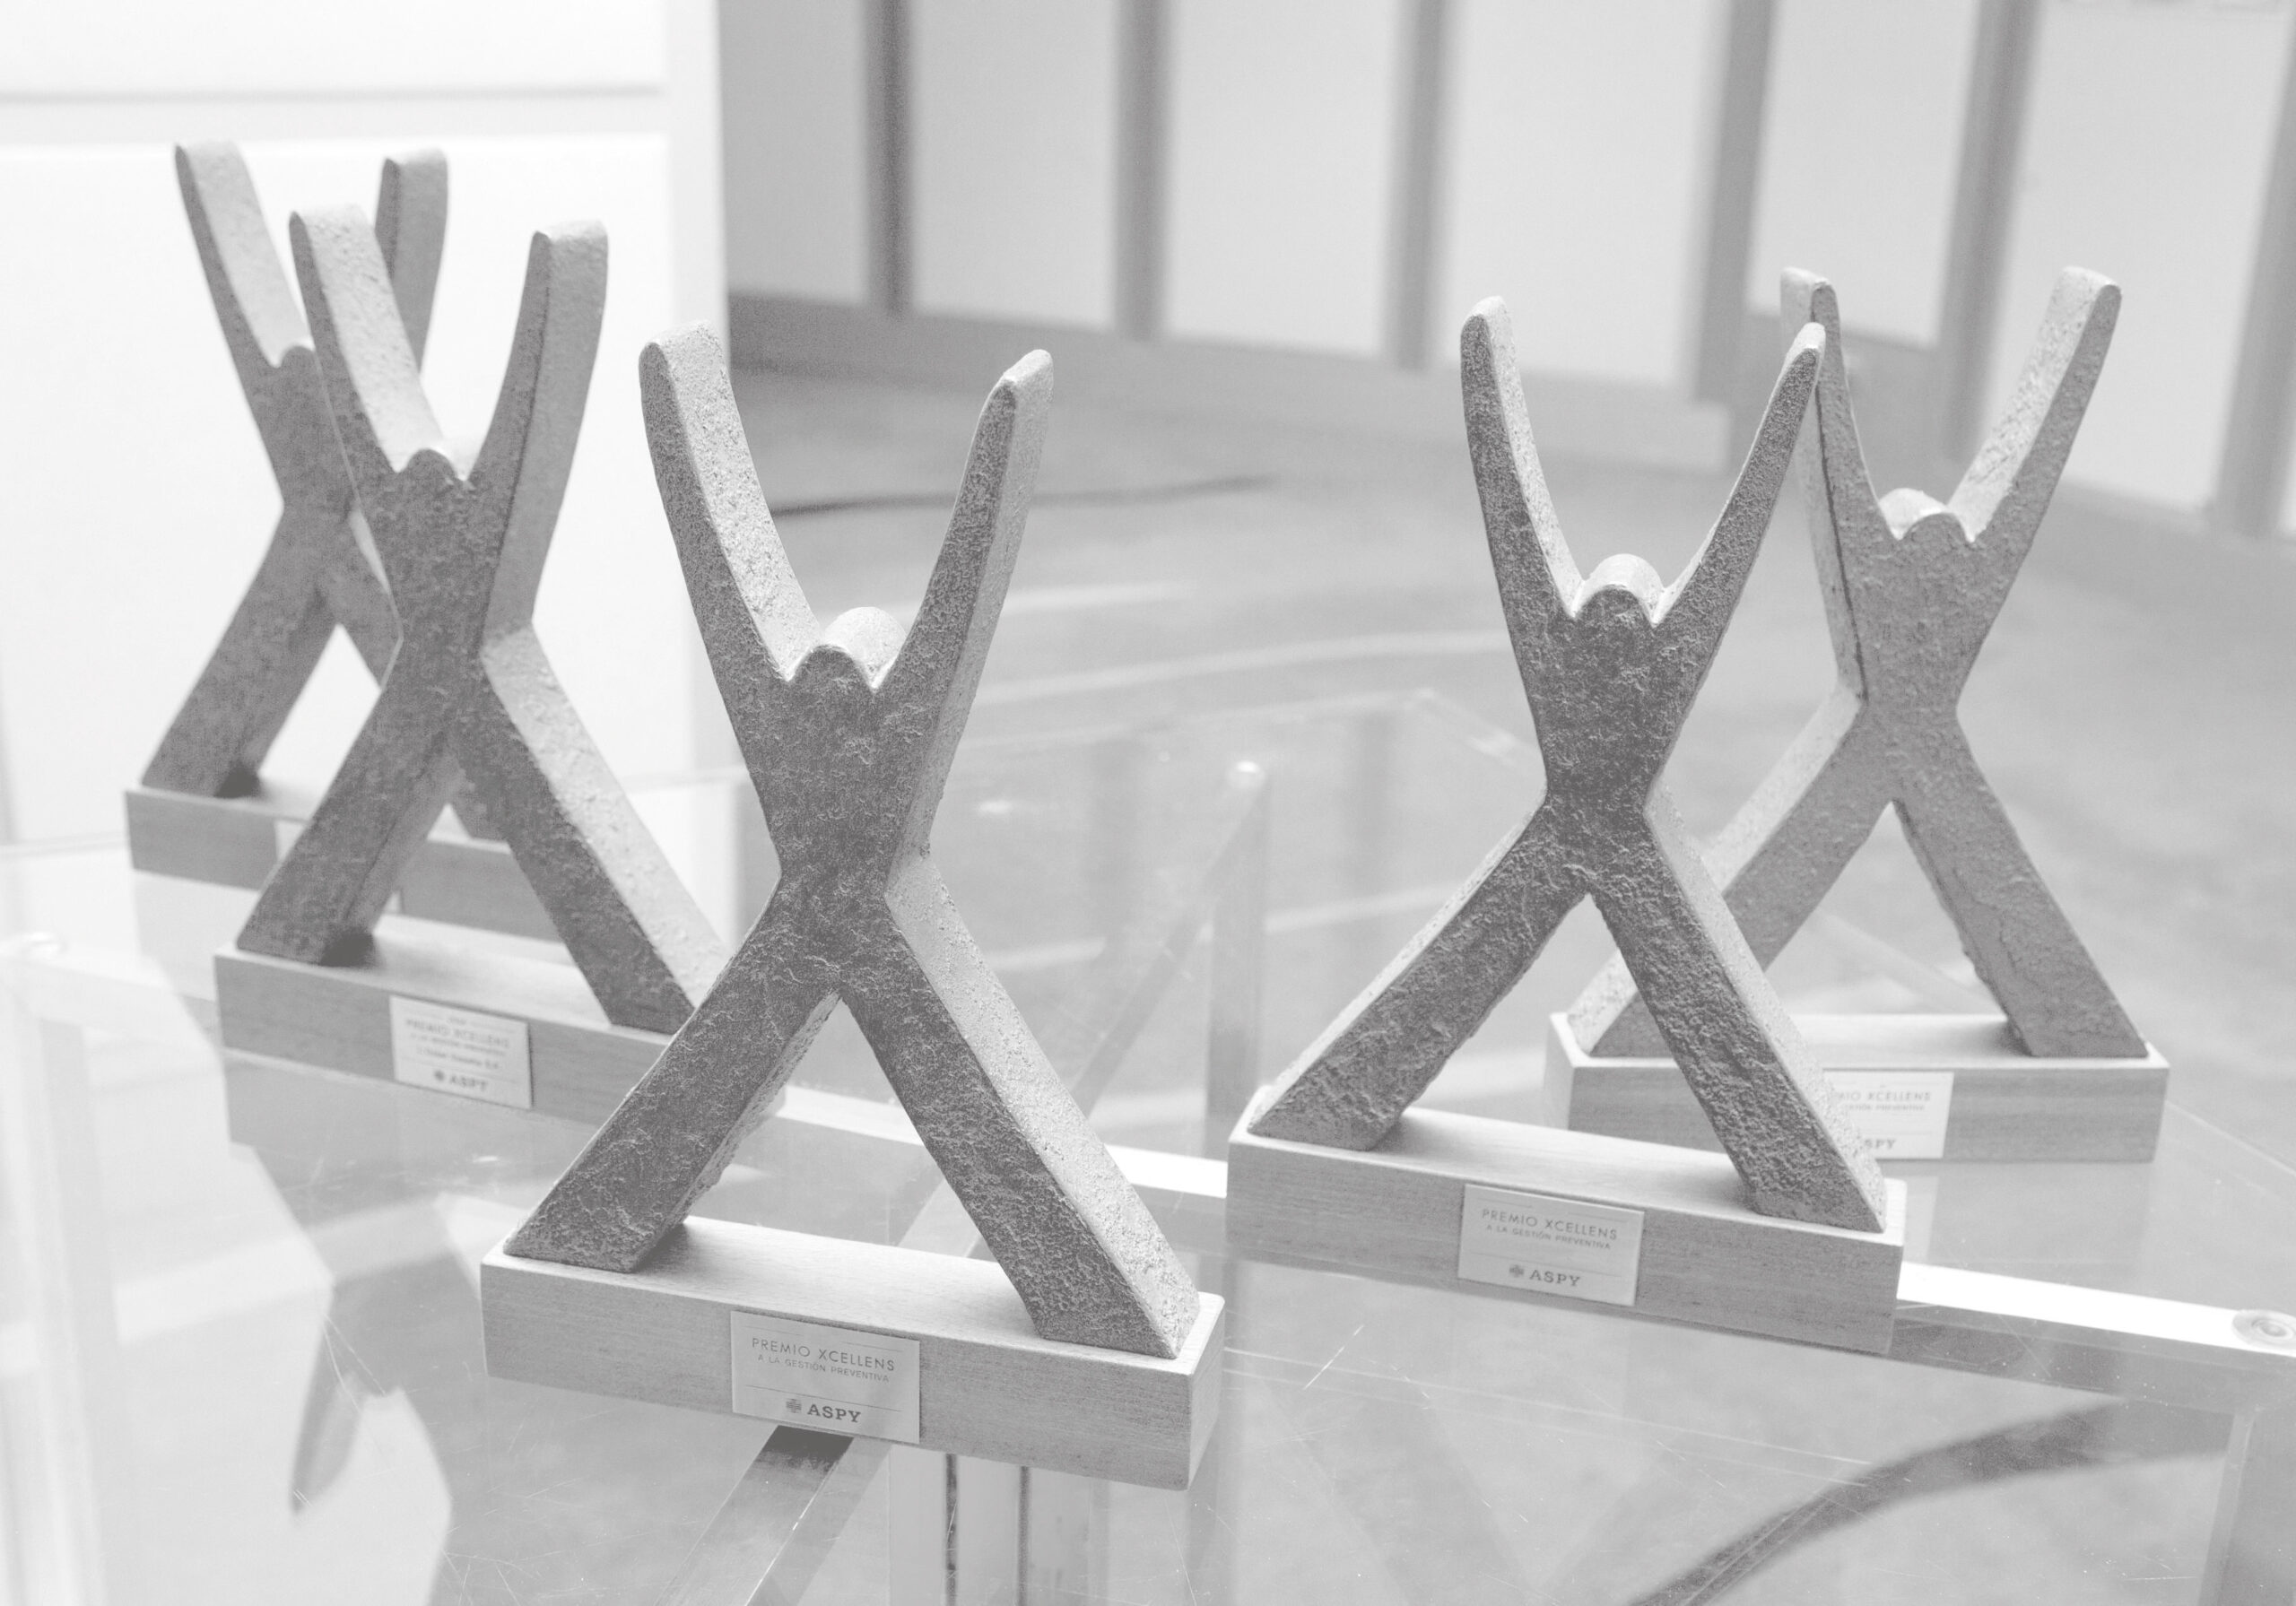 XI PREMIOS XCELLENS | Banco Sabadell, Química del Nalón y Cisco Systems ganan los premios Xcellens de ASPY